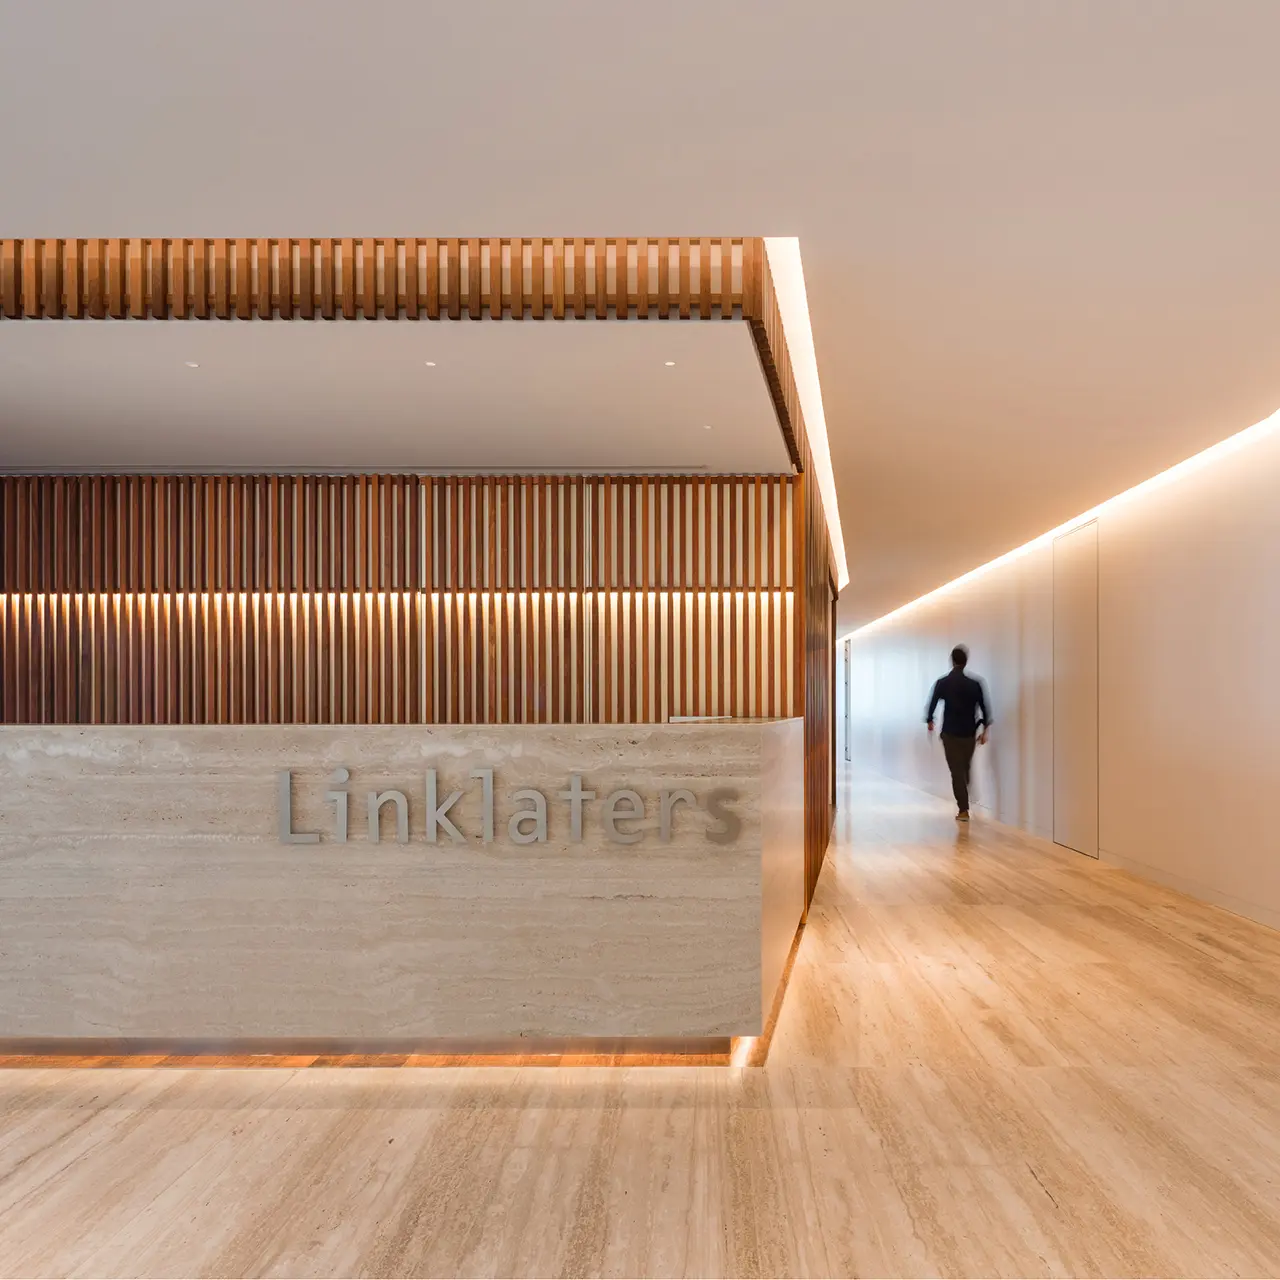 Linklaters Portugal (Edifício-Sede) - Portefólio - CICOMOL CICODOOR - Fabrico de Portas Carpintaria Madeiras - Ourém